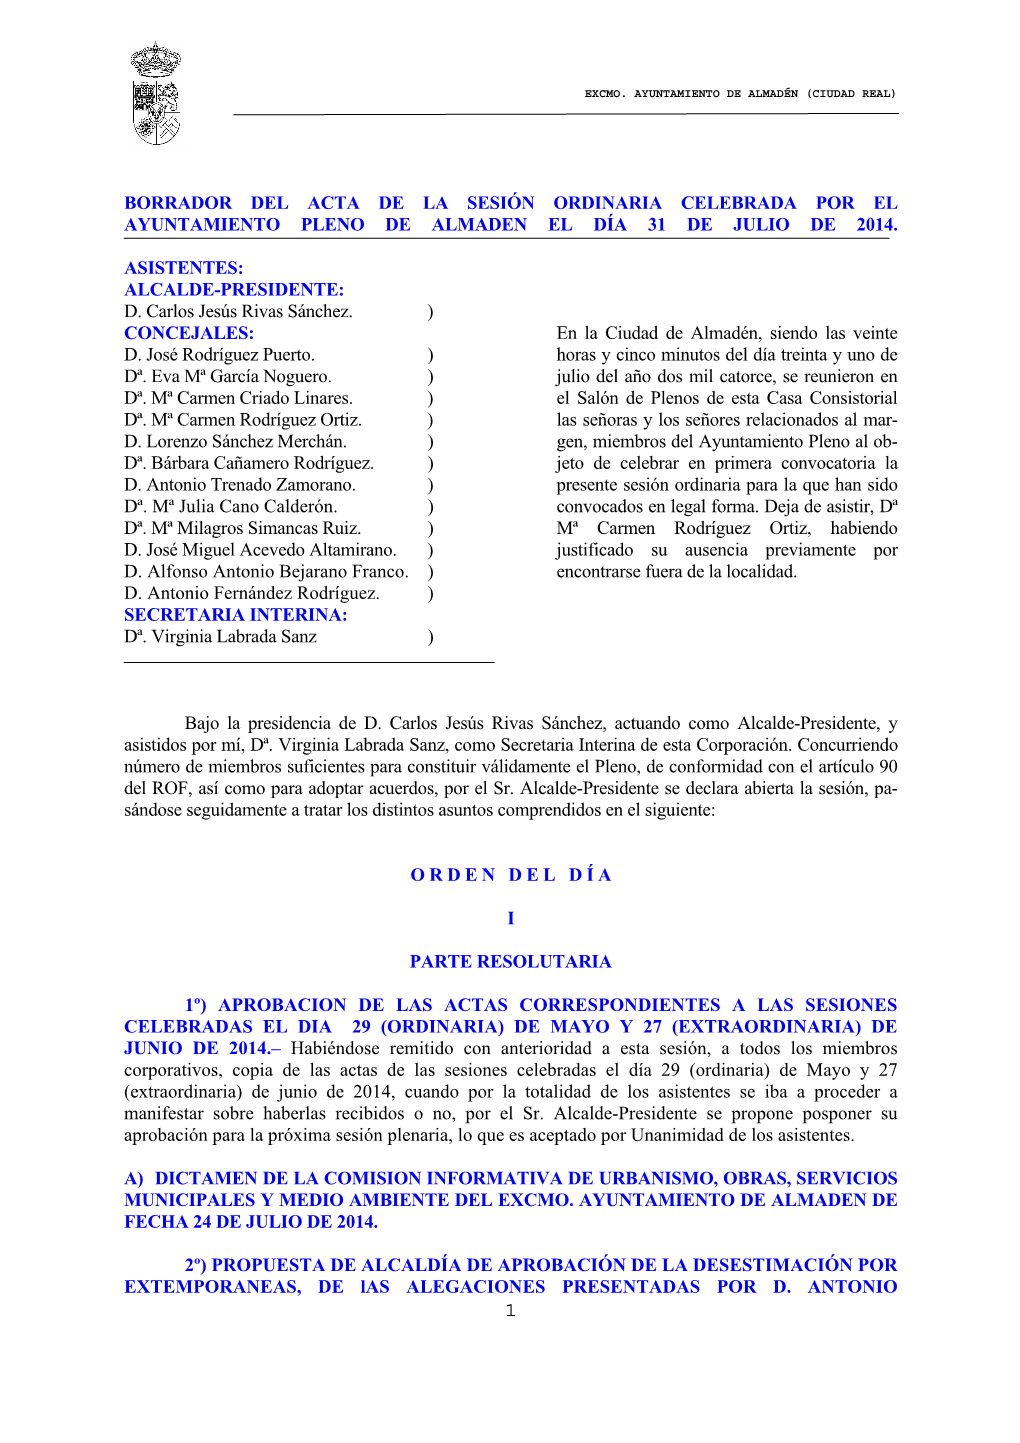 Borrador Del Acta De La Sesión Ordinaria Celebrada Por El Ayuntamiento Pleno De Almaden El Día 31 De Julio De 2014